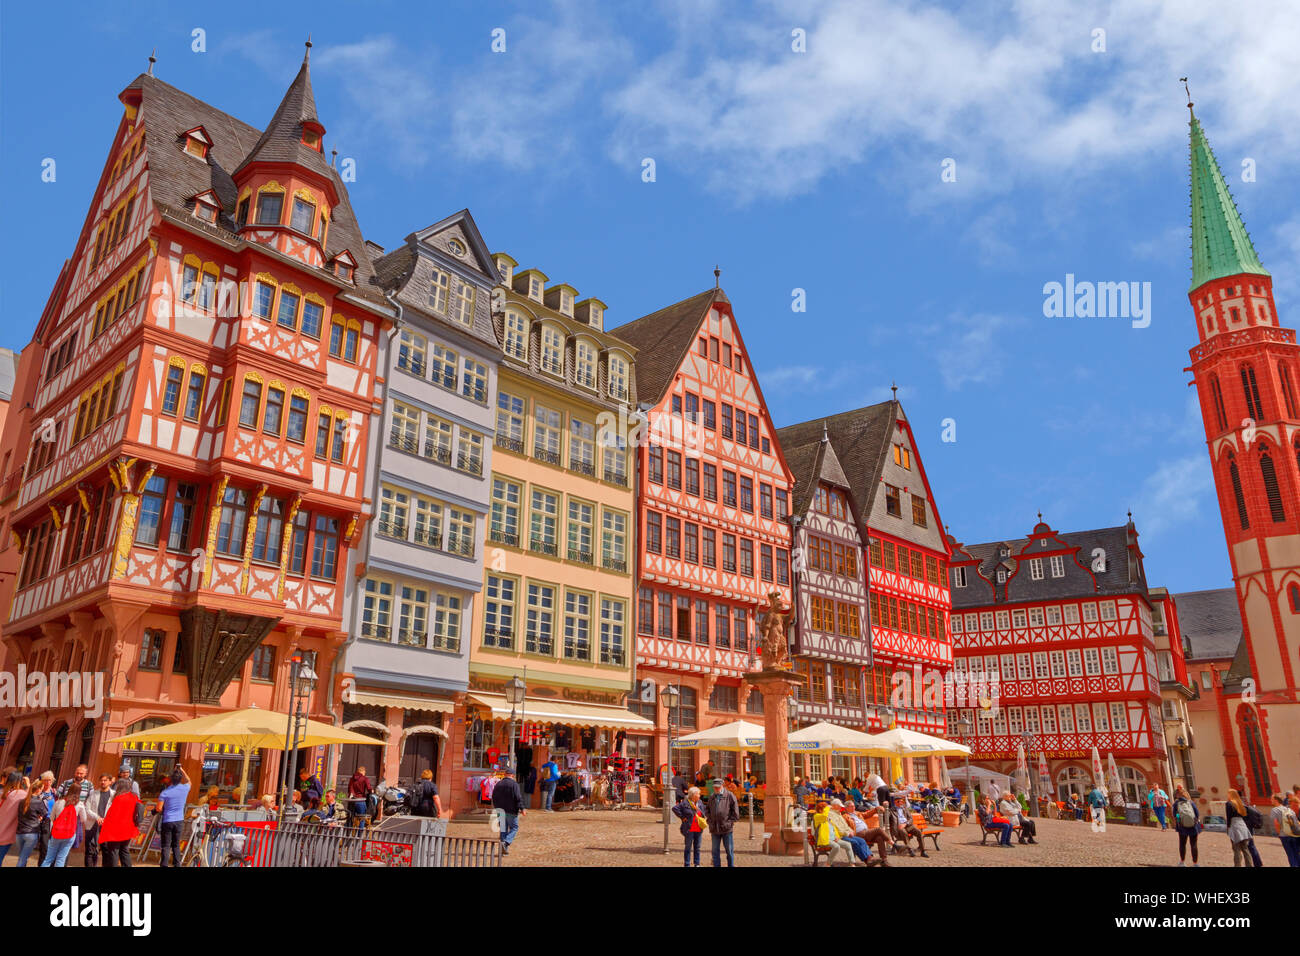 Bâtiments à colombages sur Römerberg dans la vieille ville de Frankfurt am Main, Hesse, Allemagne. Banque D'Images